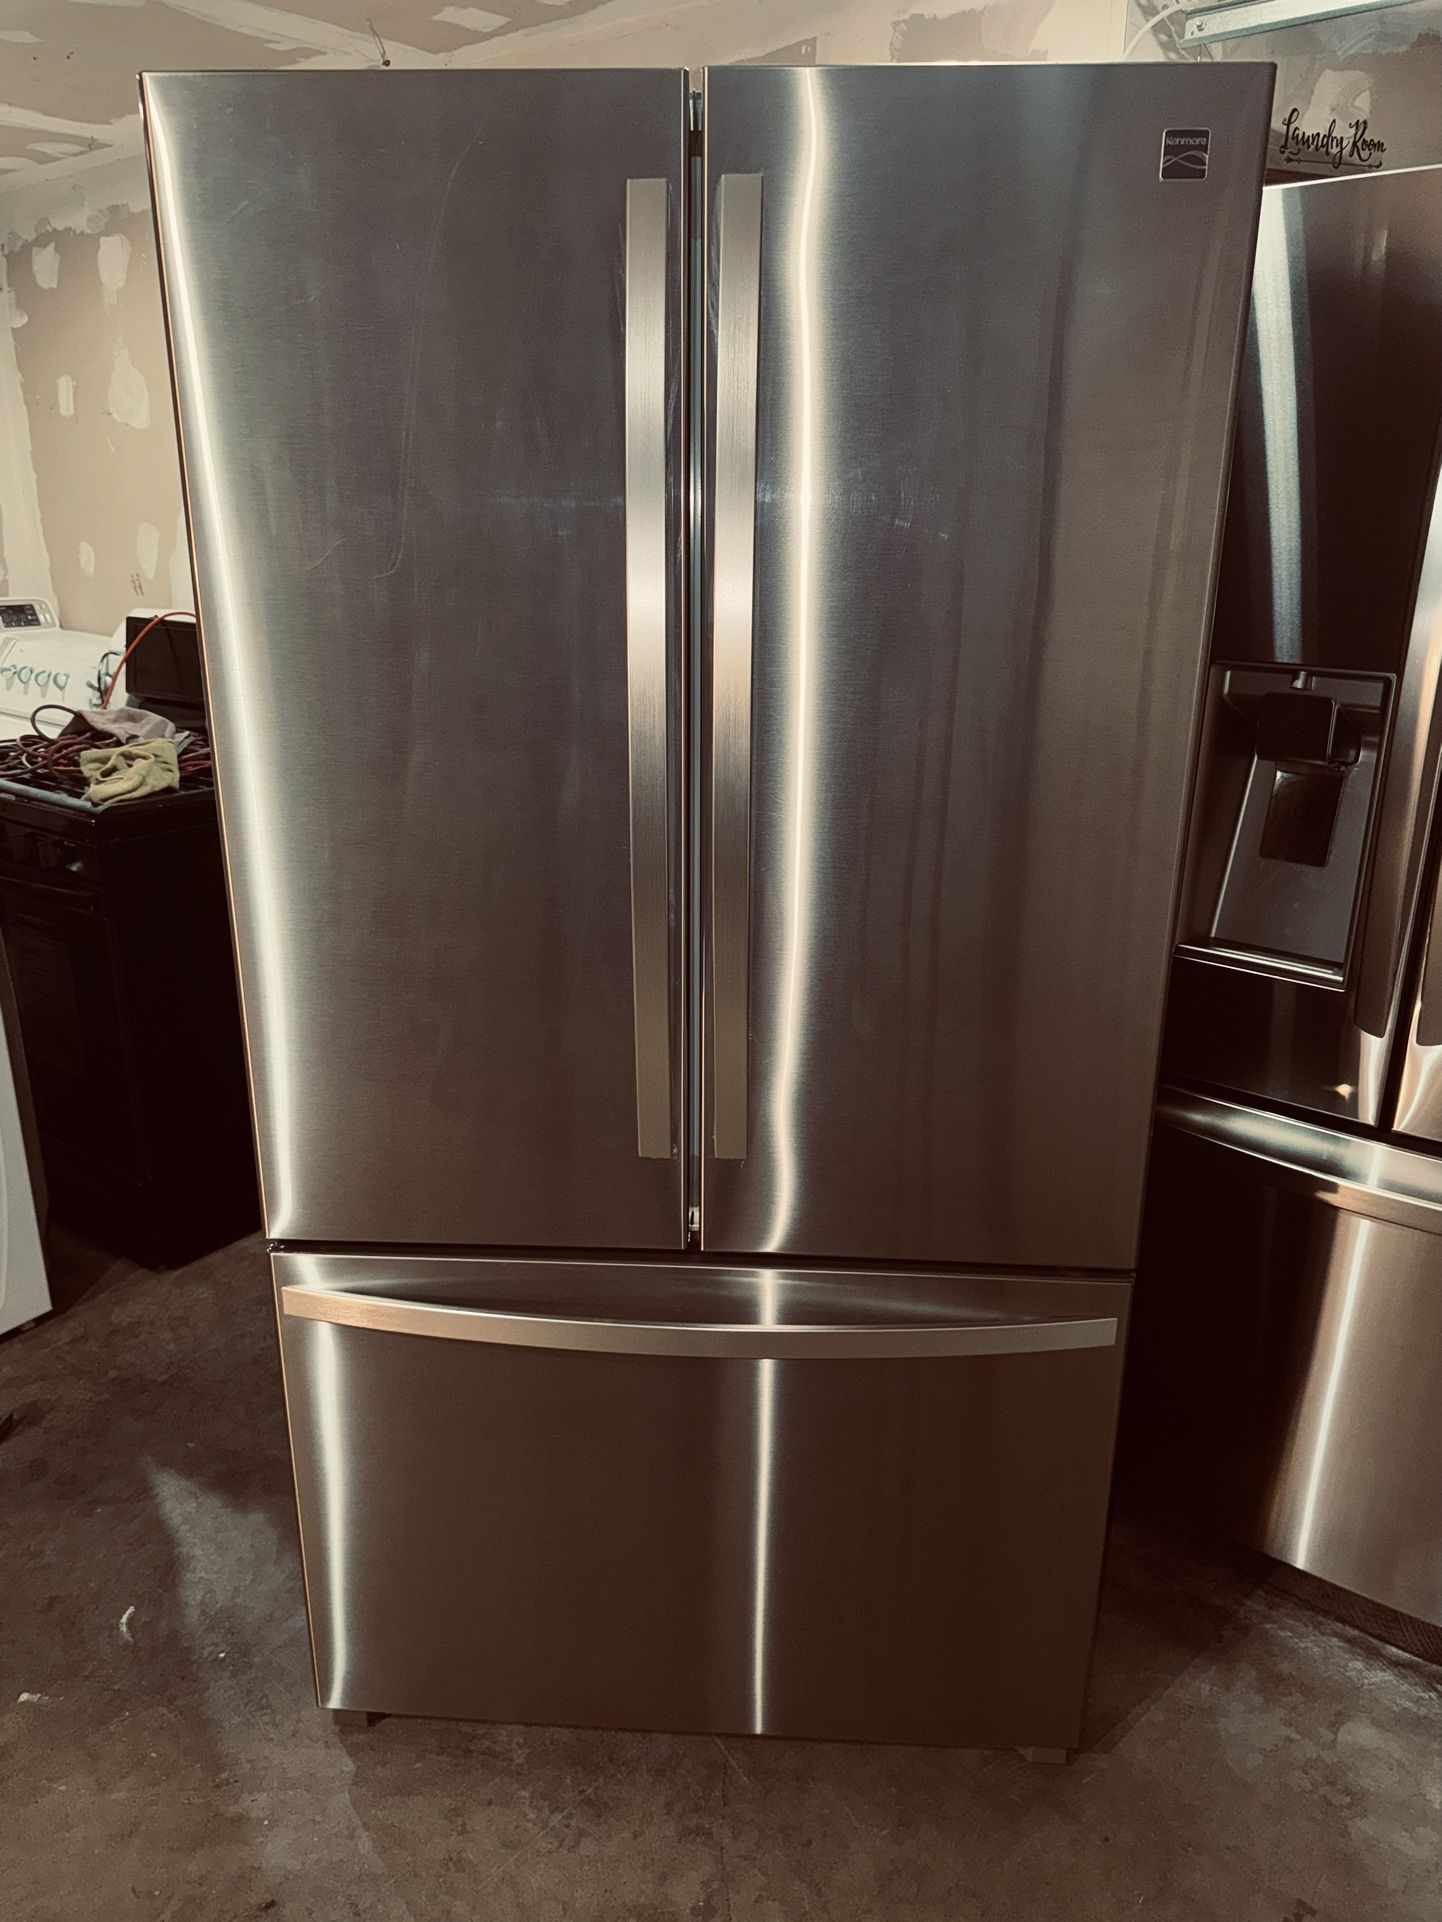 Refrigerador Kenmore Works Perfec 3 Month Warranty We Deliver 